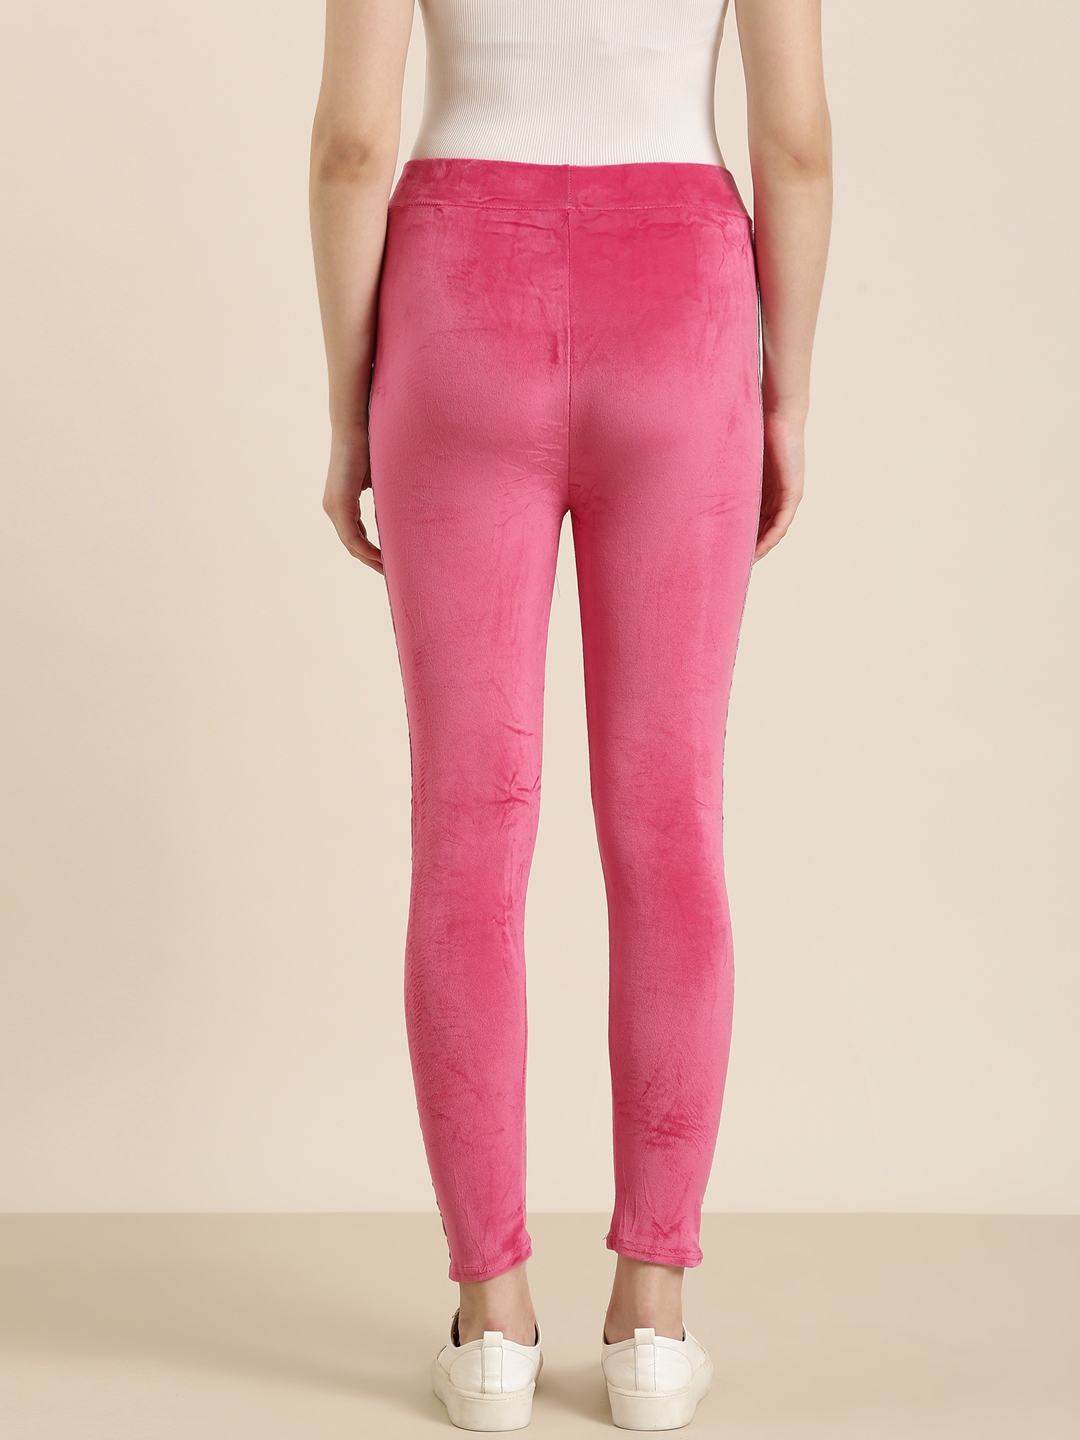 Hot Pink Velvet Leggings, Bottoms